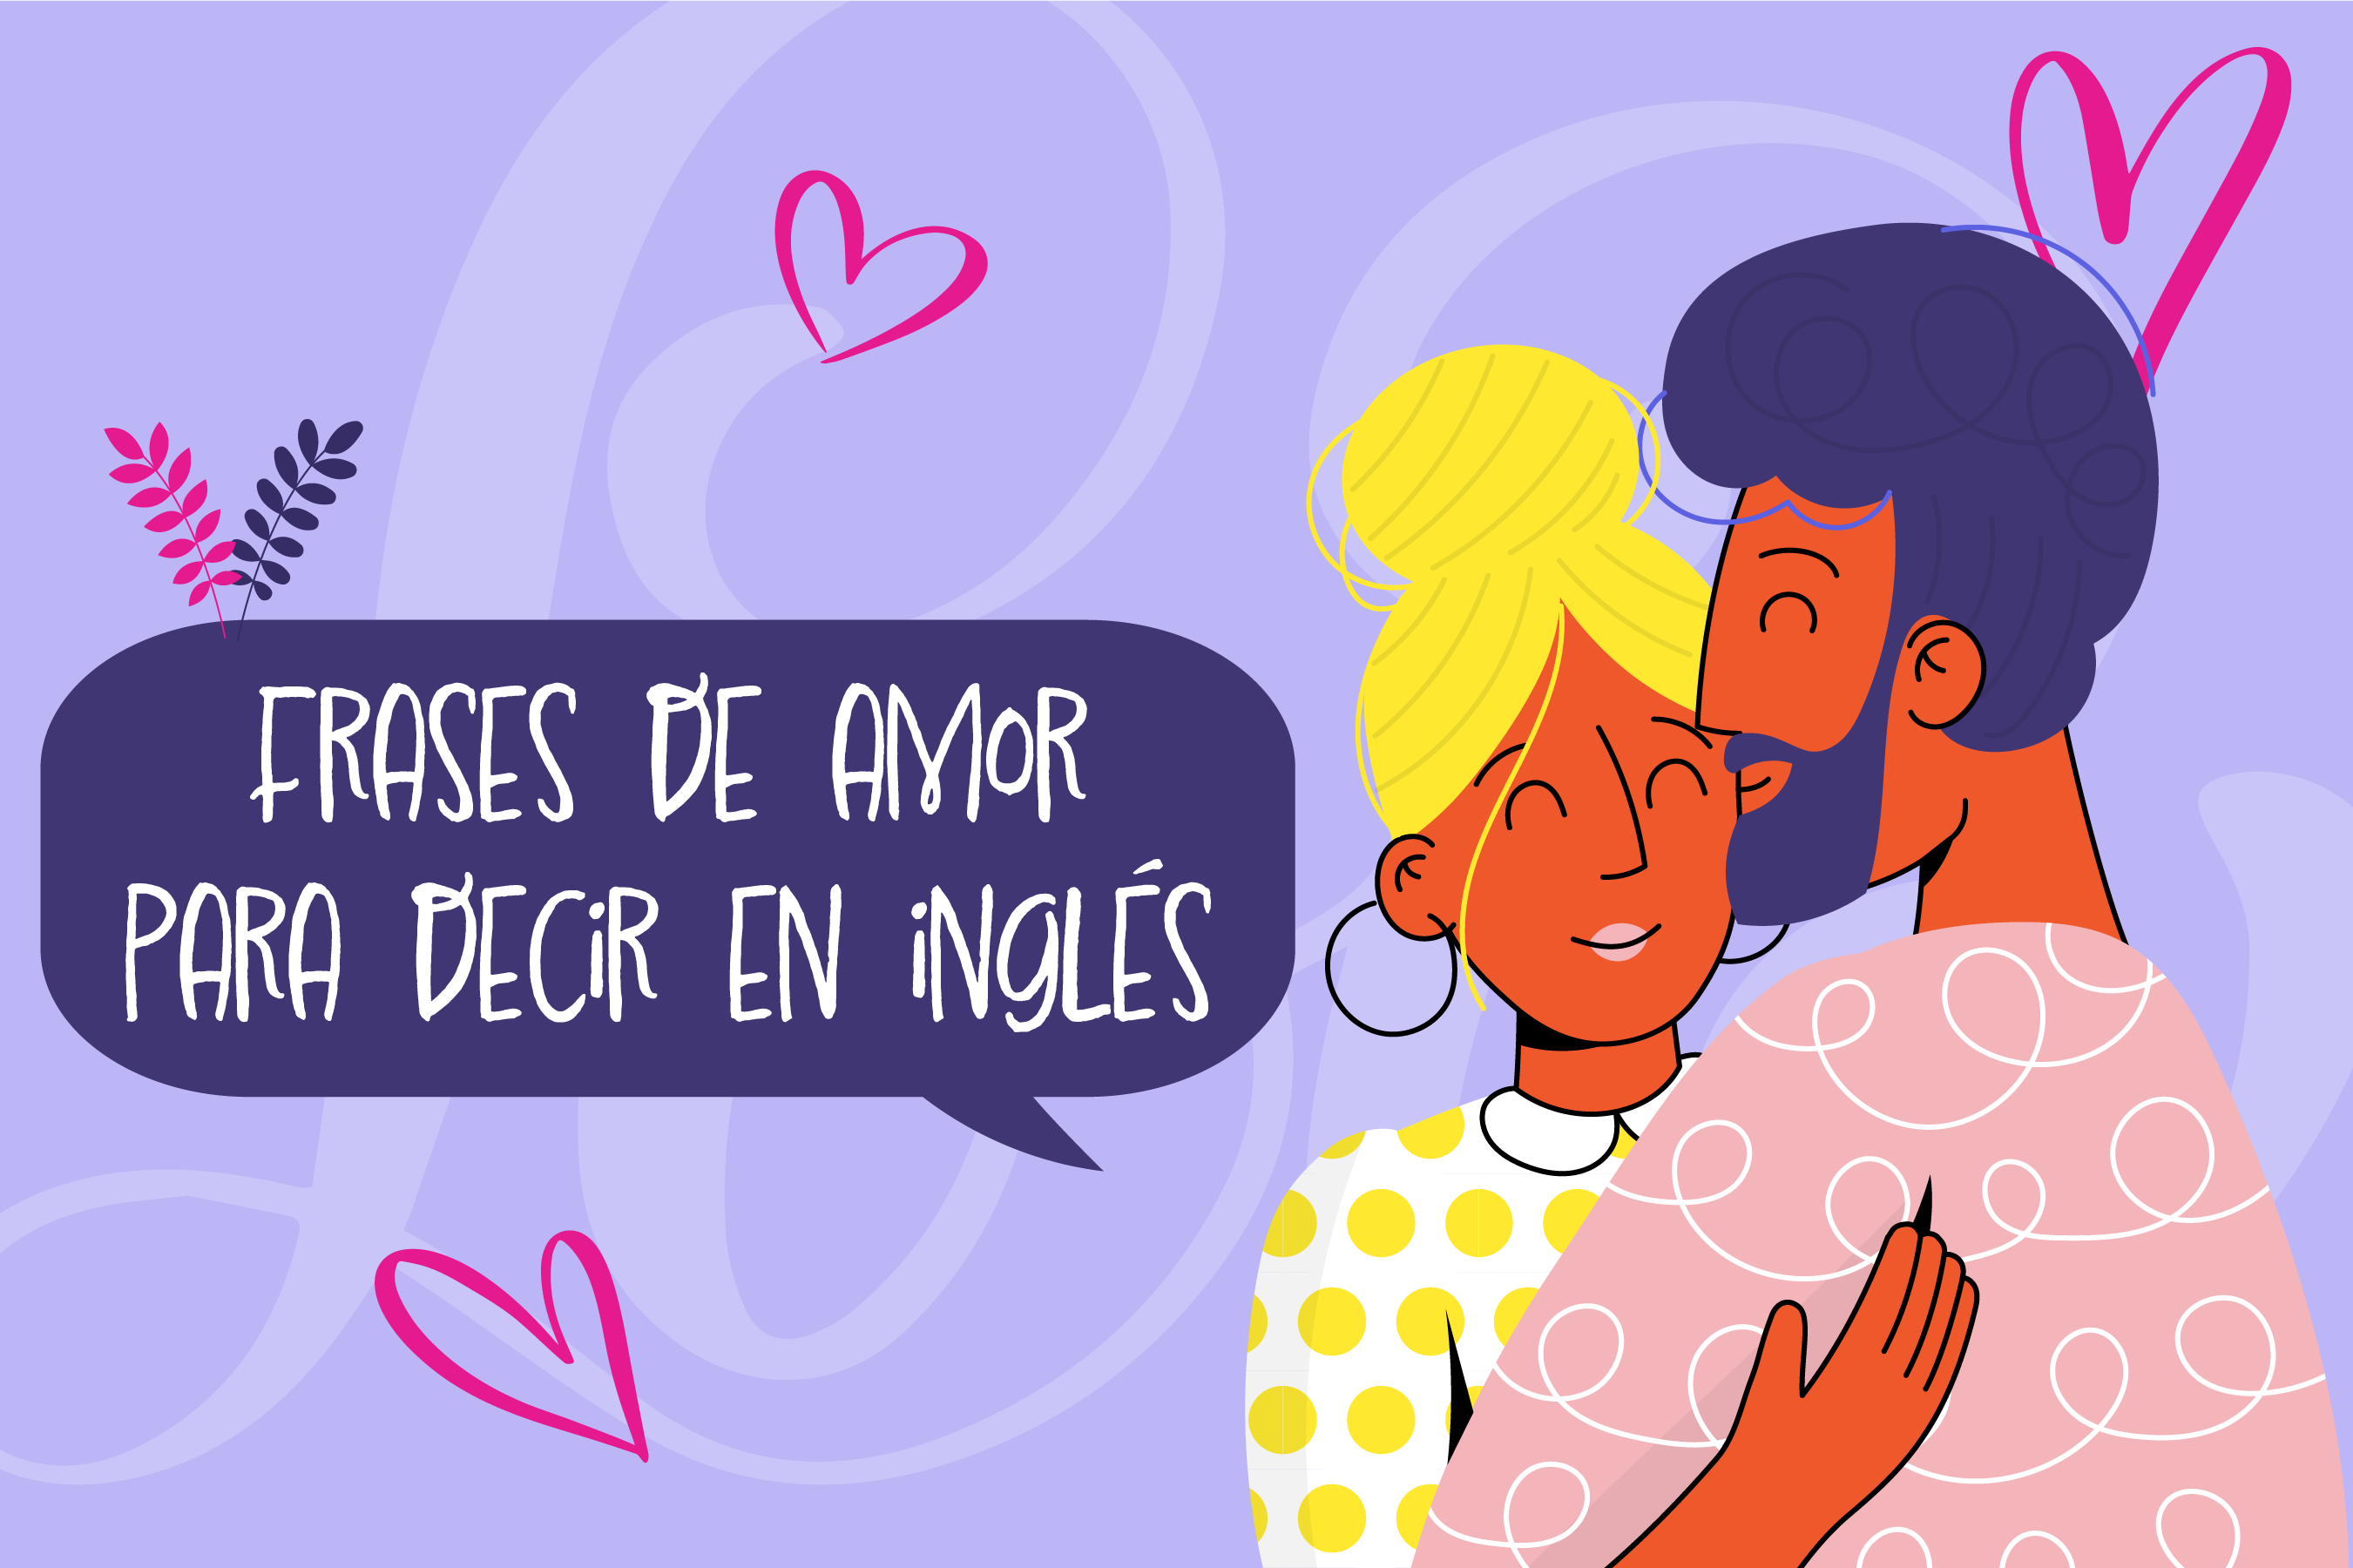 Cómo se dice “te amo” en inglés? Aprenda estas y otras frases románticas |  El Espectador